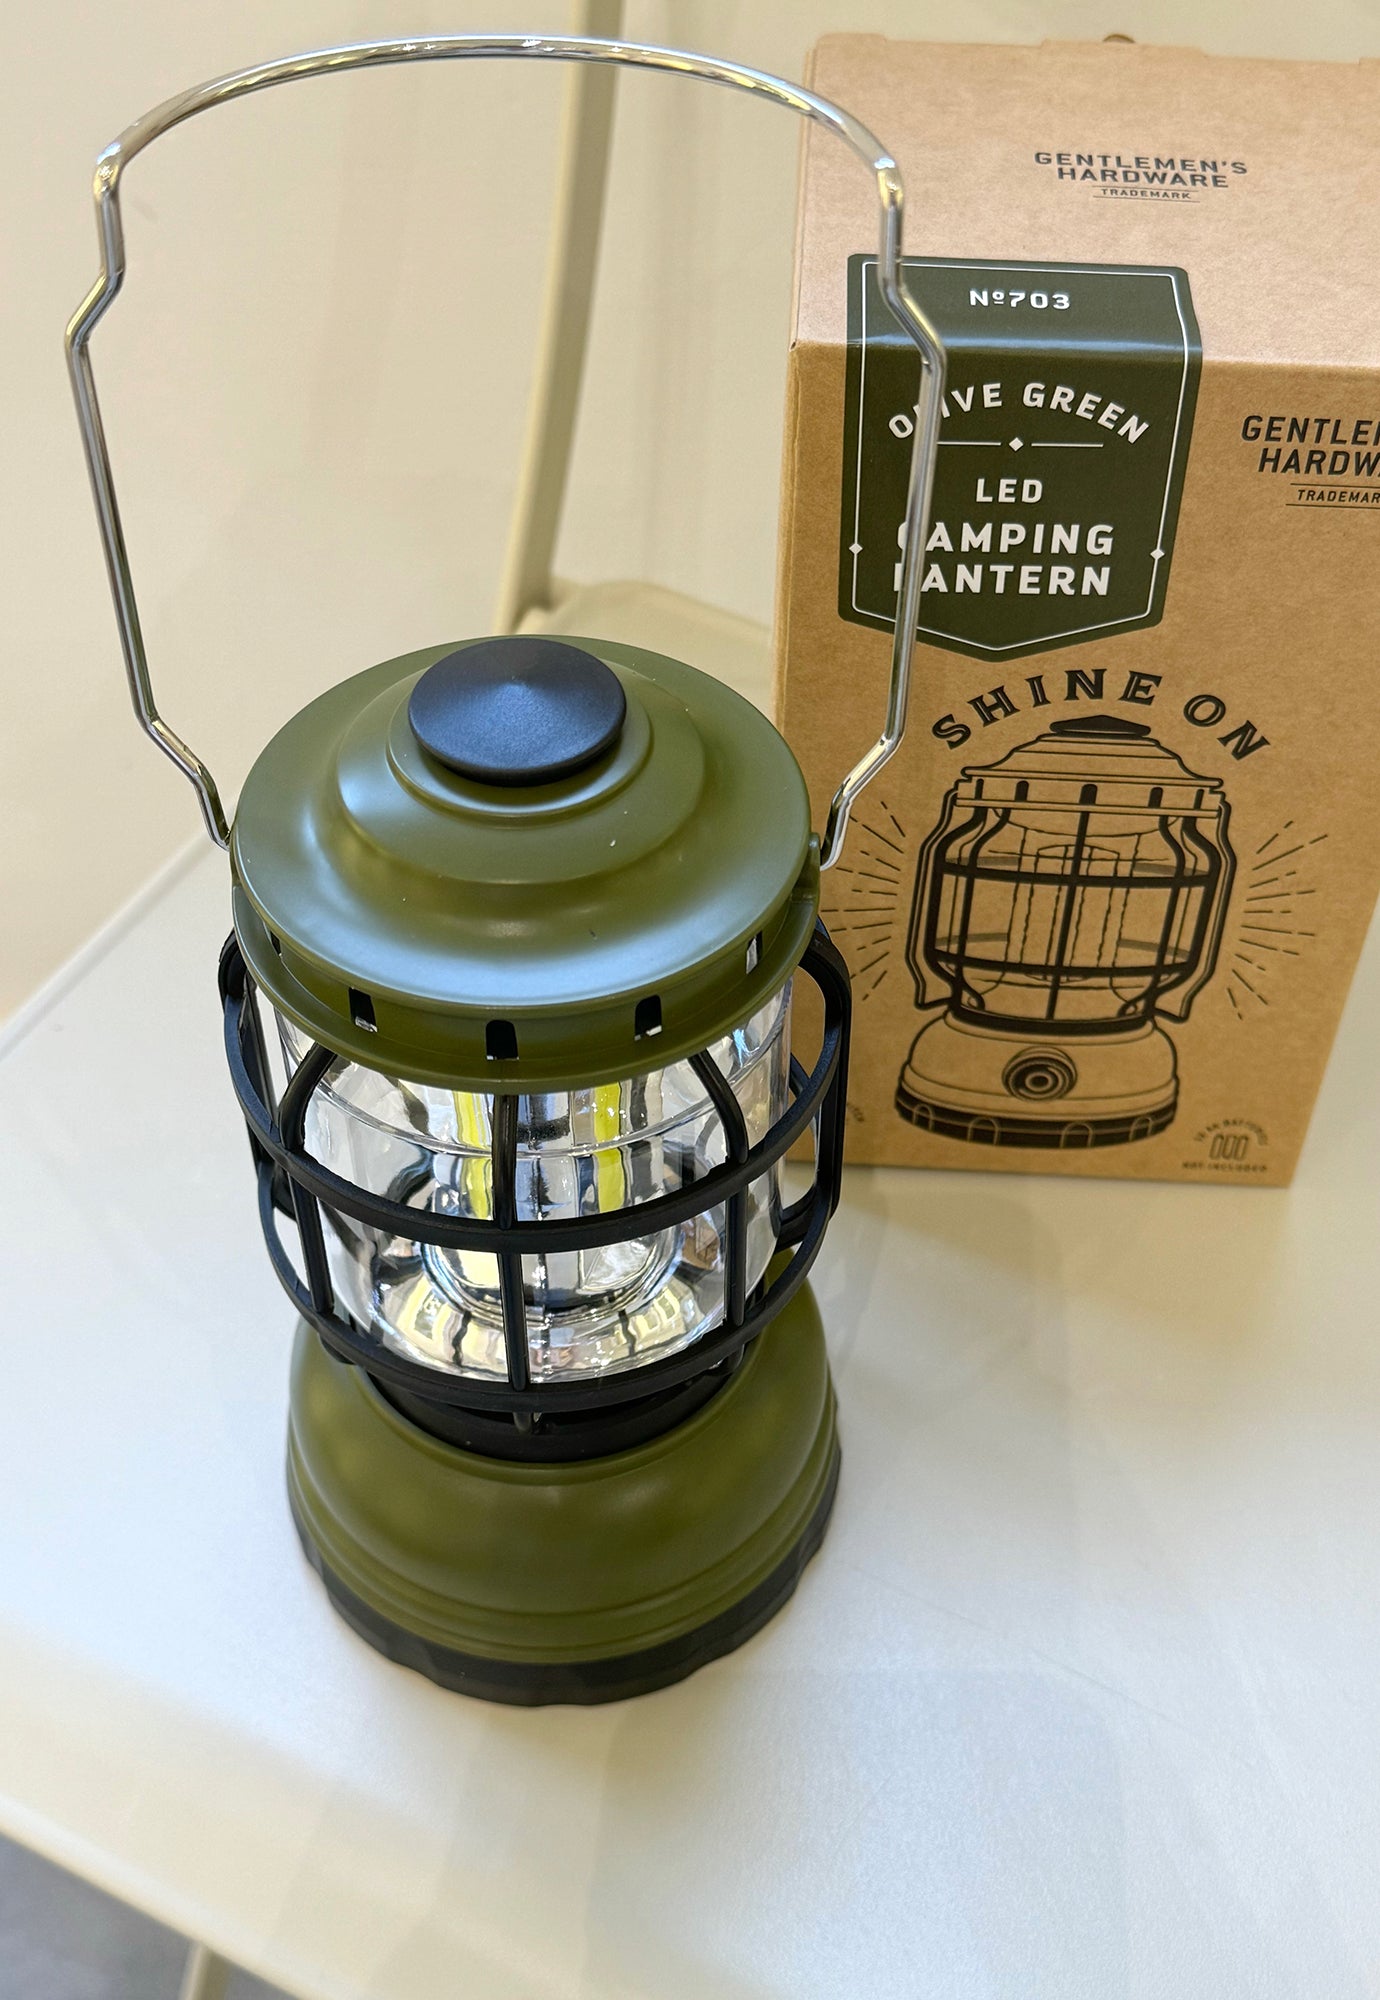 gentlemen's hardware - camping lantern